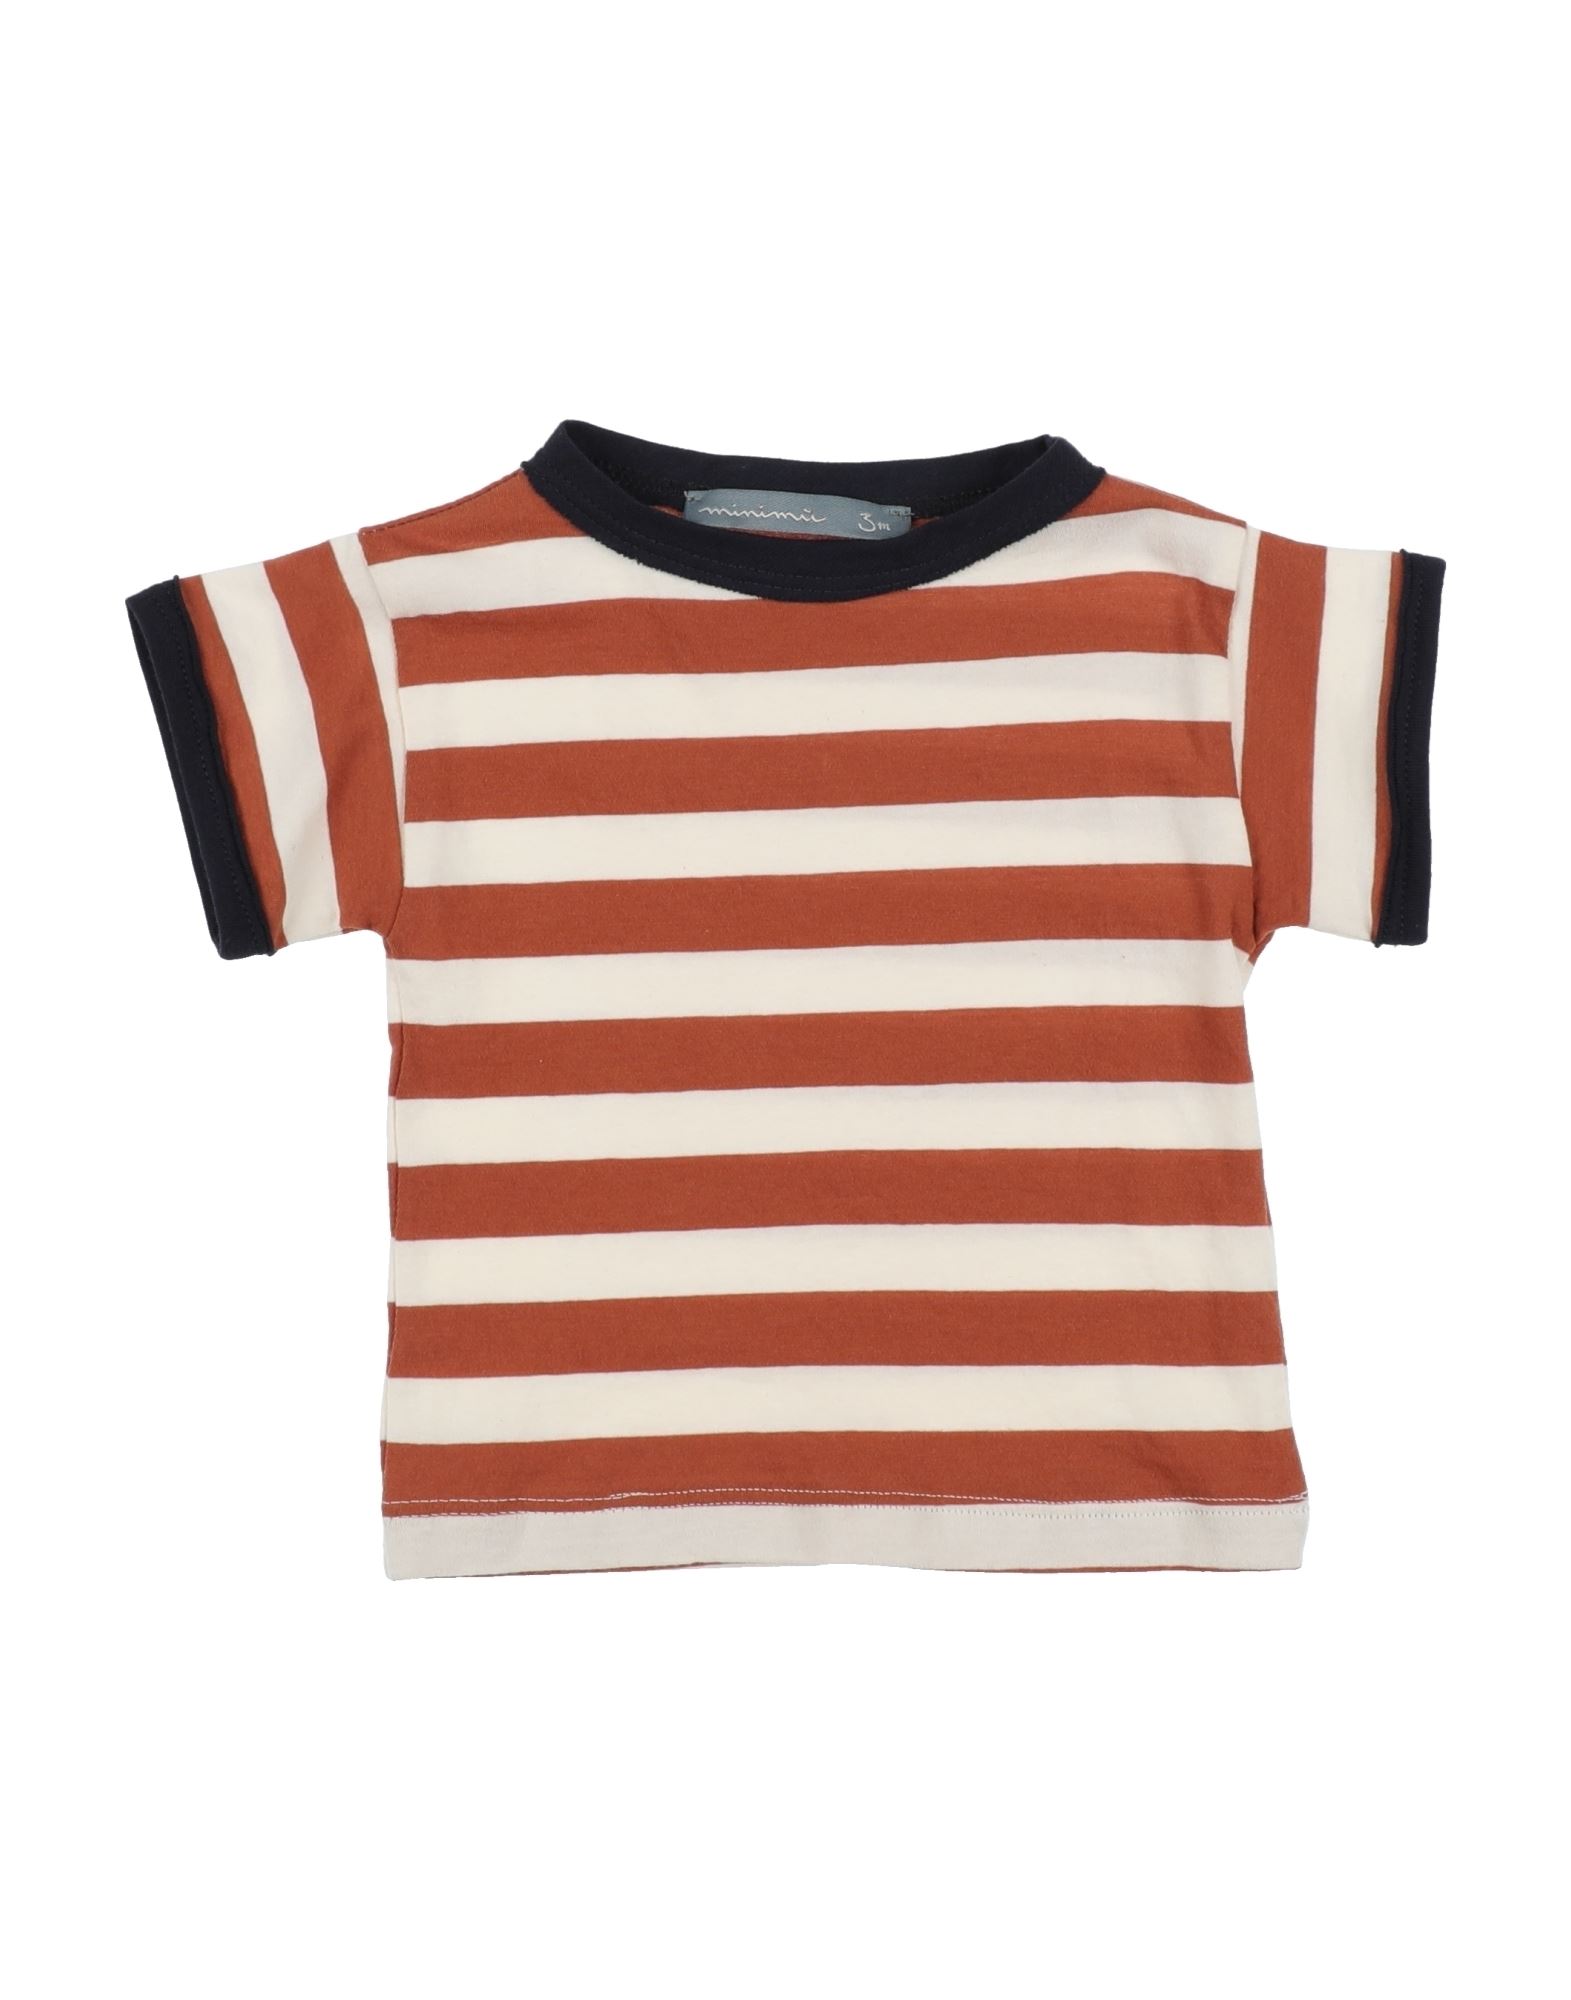 Minimu' Kids'  Newborn Boy T-shirt Tan Size 3 Cotton In Brown